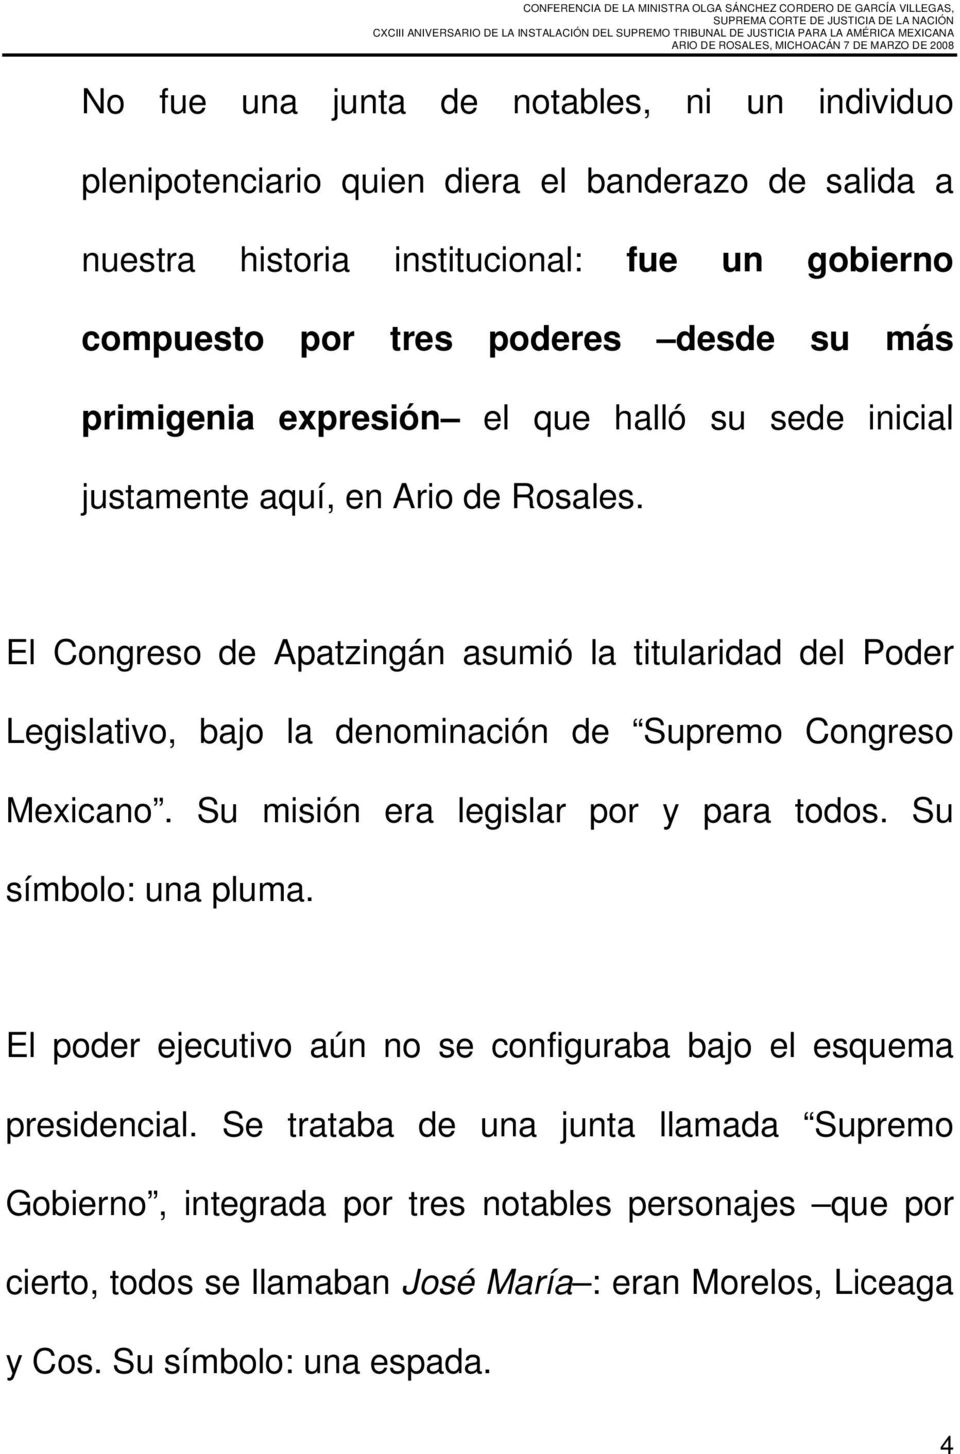 El Congreso de Apatzingán asumió la titularidad del Poder Legislativo, bajo la denominación de Supremo Congreso Mexicano. Su misión era legislar por y para todos.